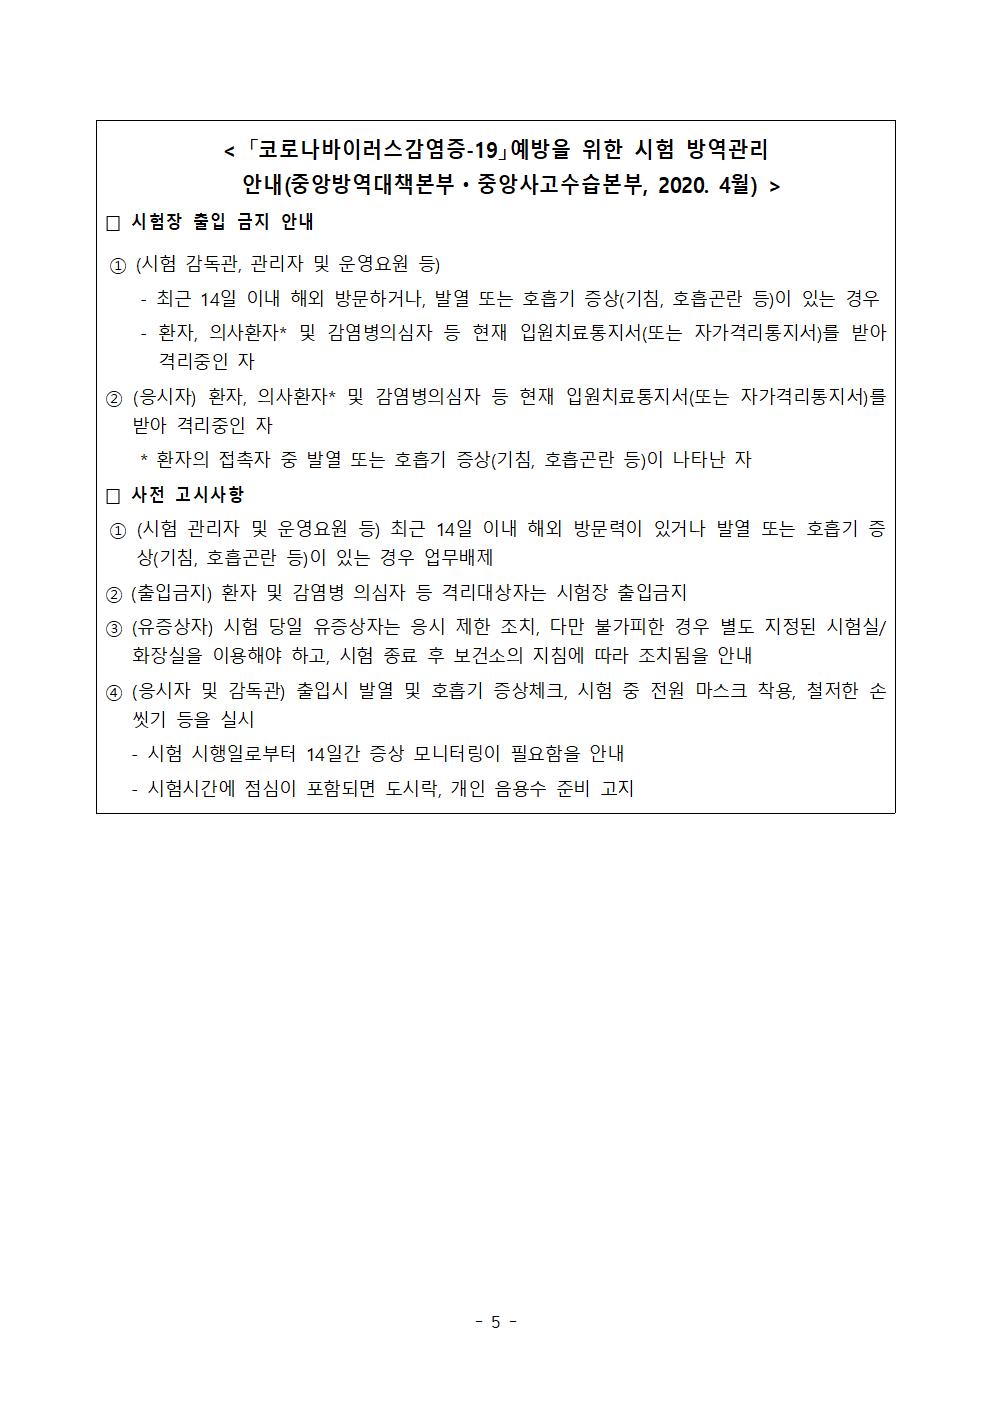 2021학년도 학교별 입학전형 안전관리 계획_한국게임과학고(홈페이지게시)007